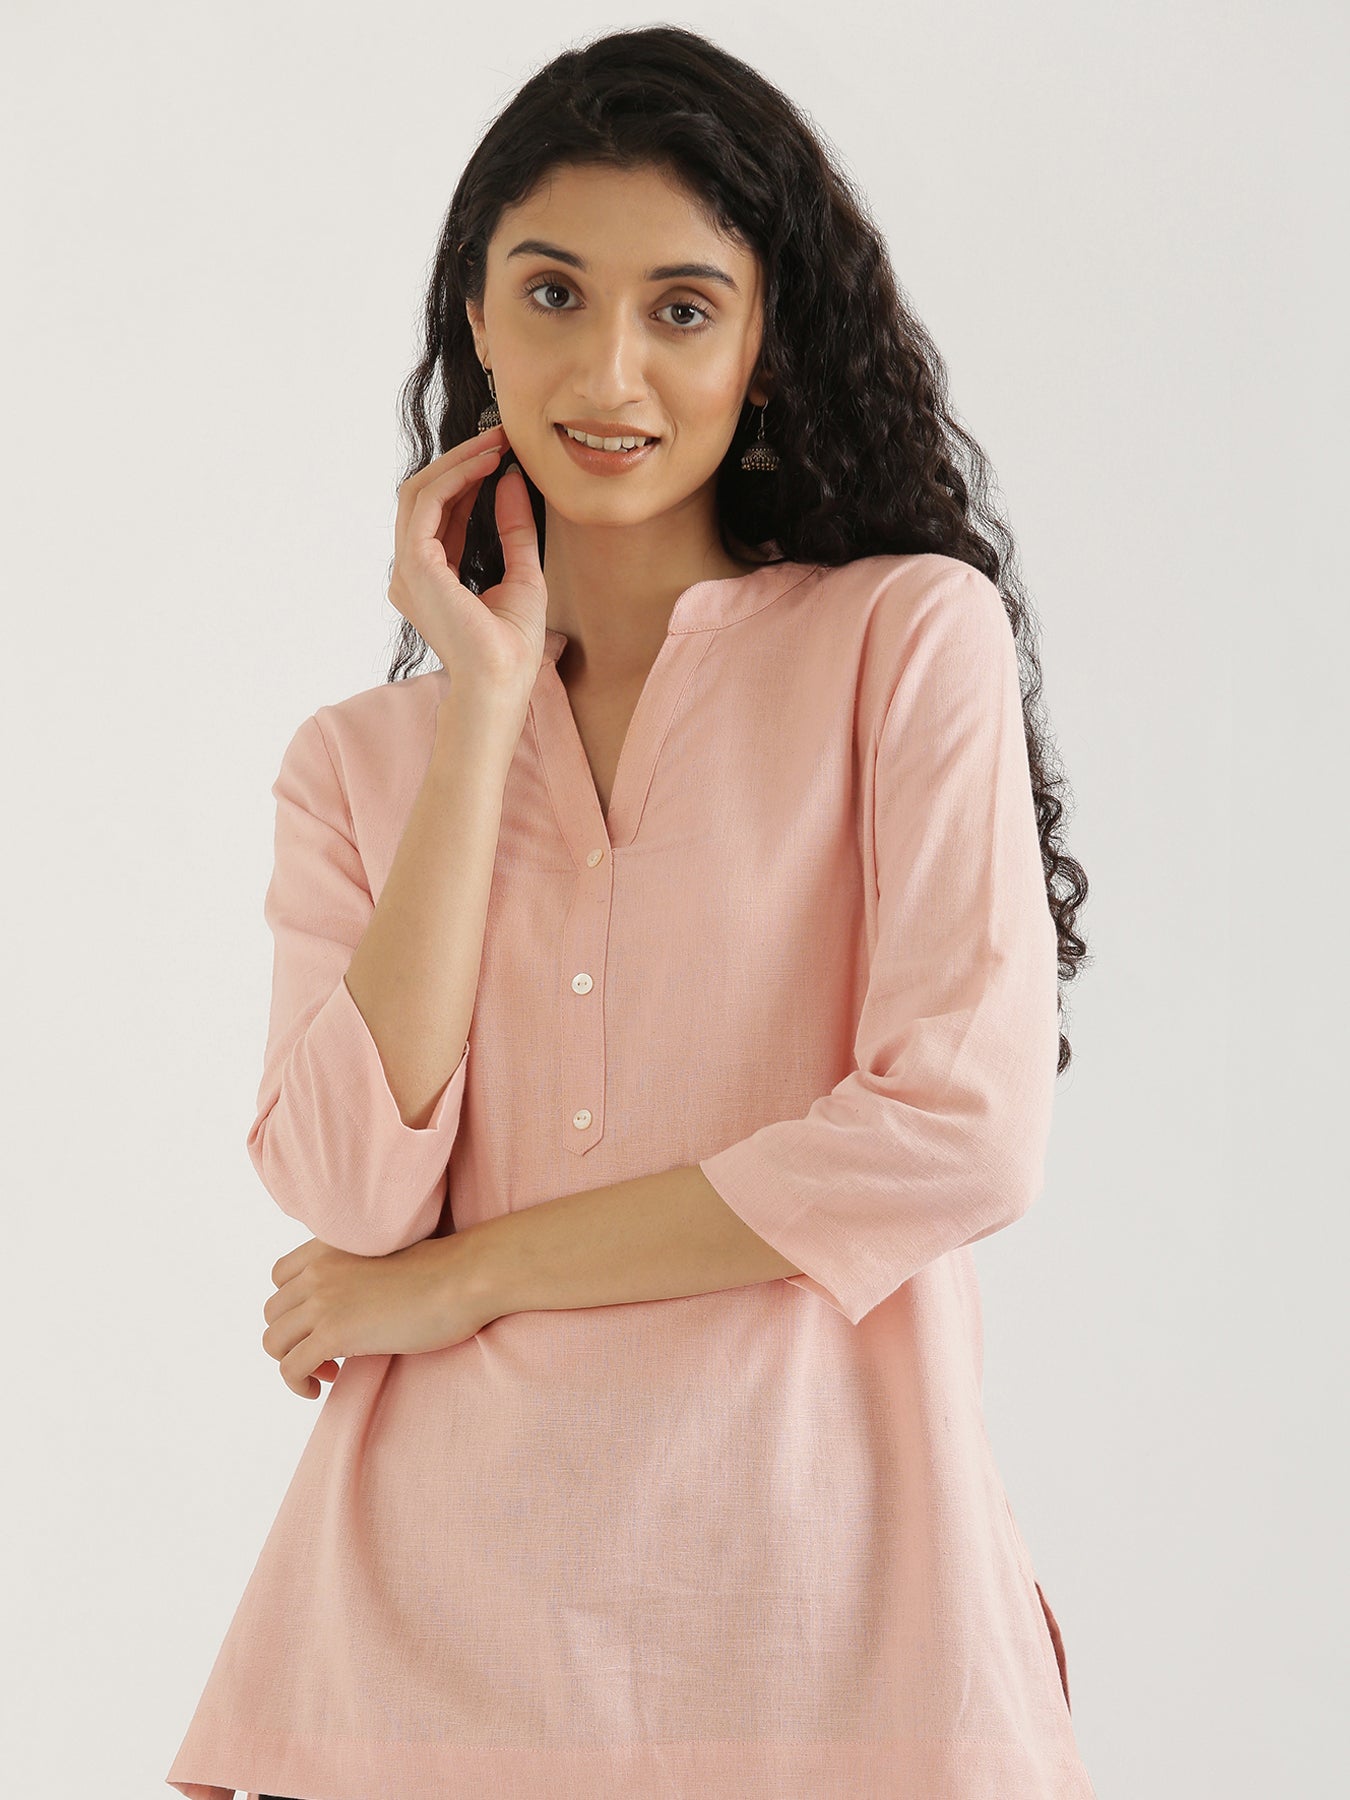 Buy Now Plain Short Cotton Kurtis Kurtas Red Color Short Kurtis For Girl –  Lady India